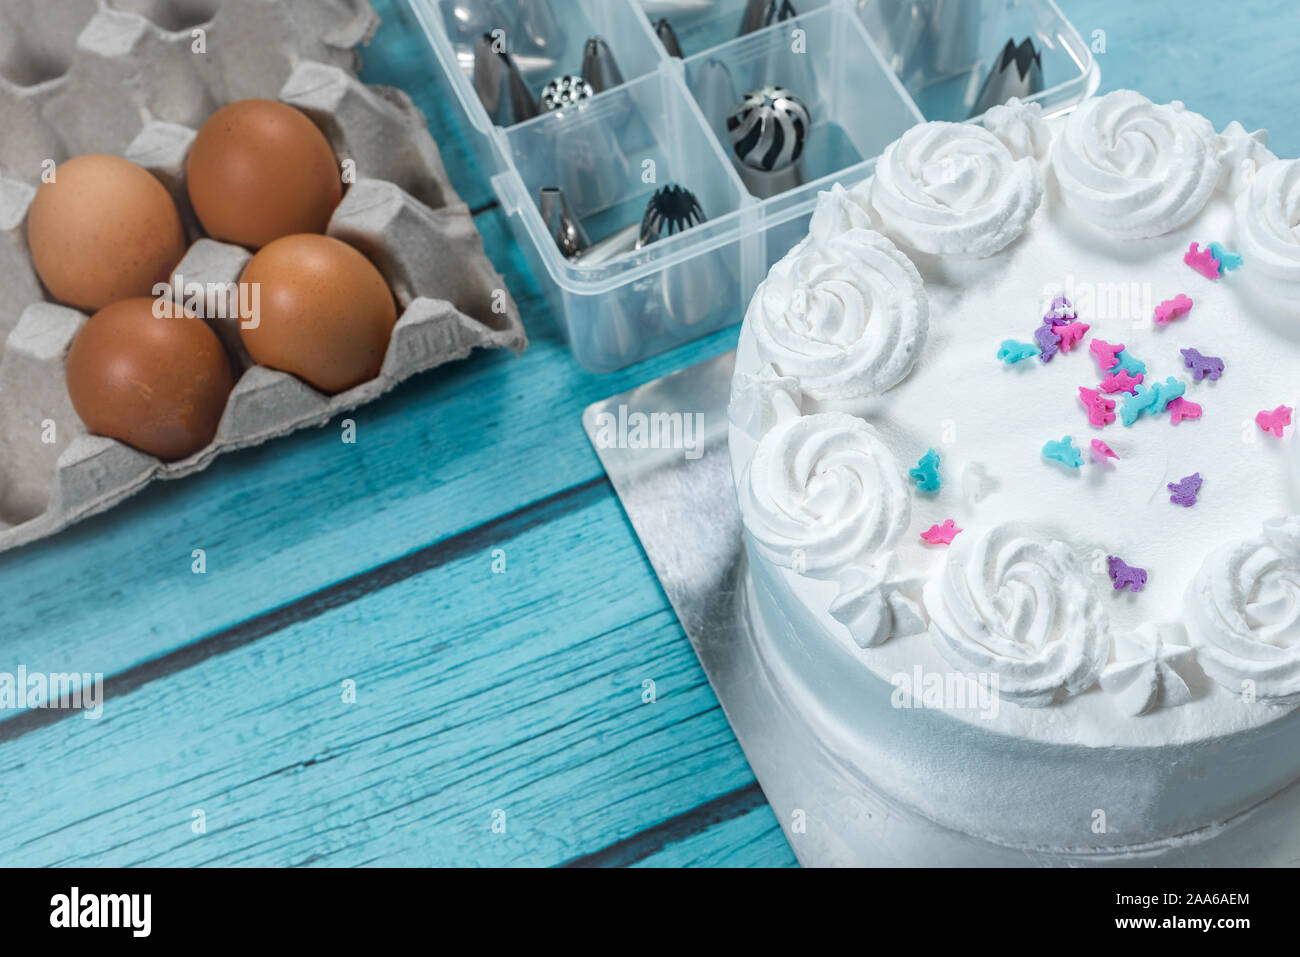 Glaseado de tartas, pasteles hornear haciendo utensilios y accesorios de cocina huevos crudos en la mesa Foto de stock